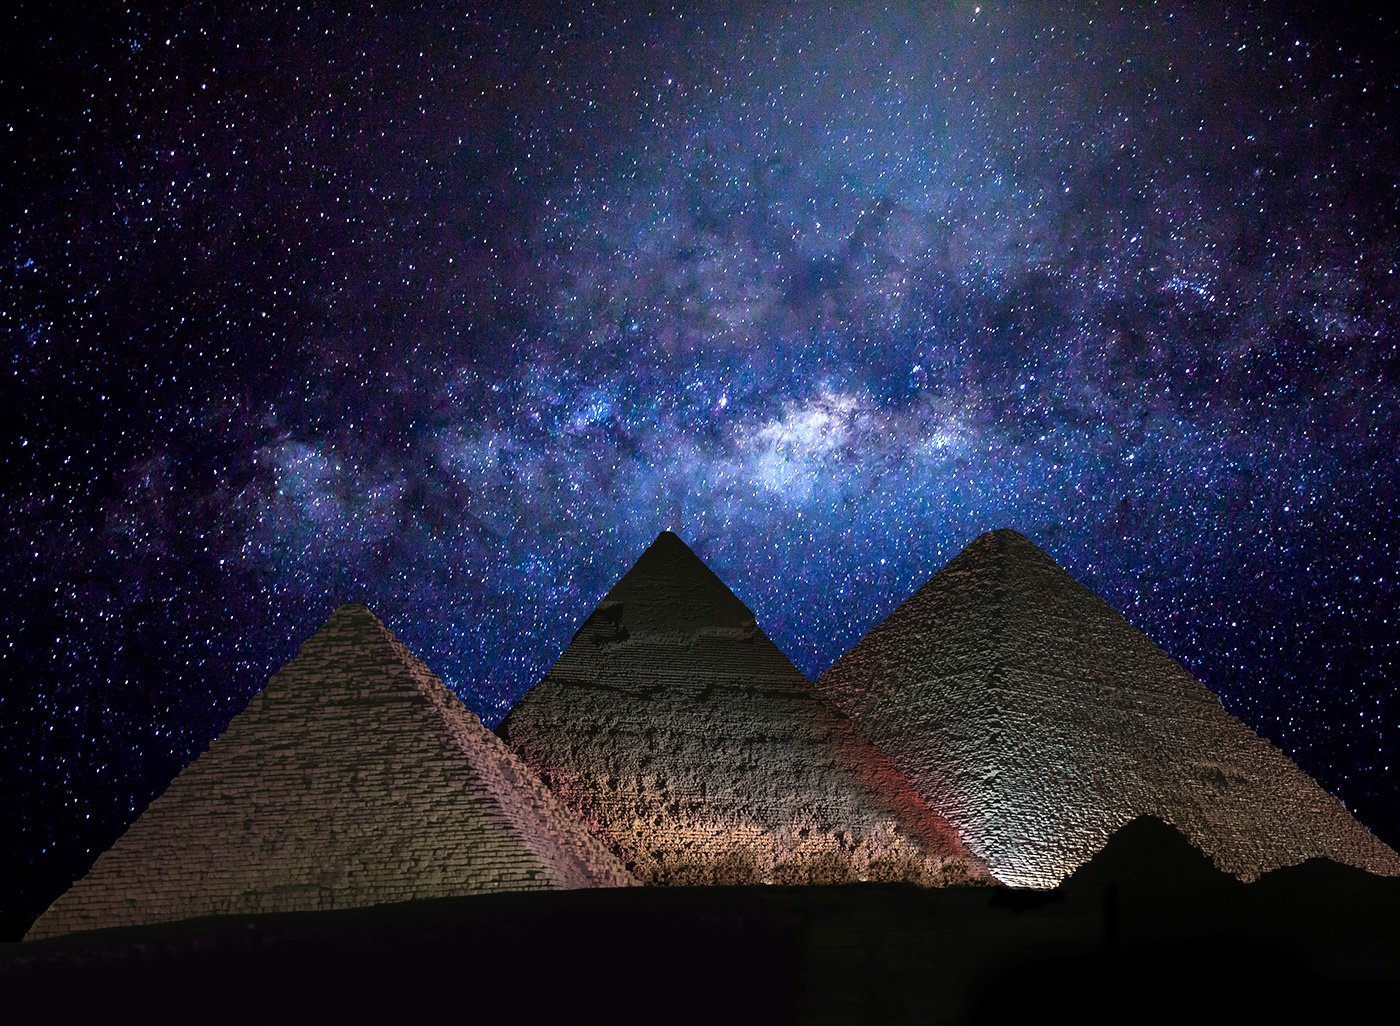 can i visit pyramids at night